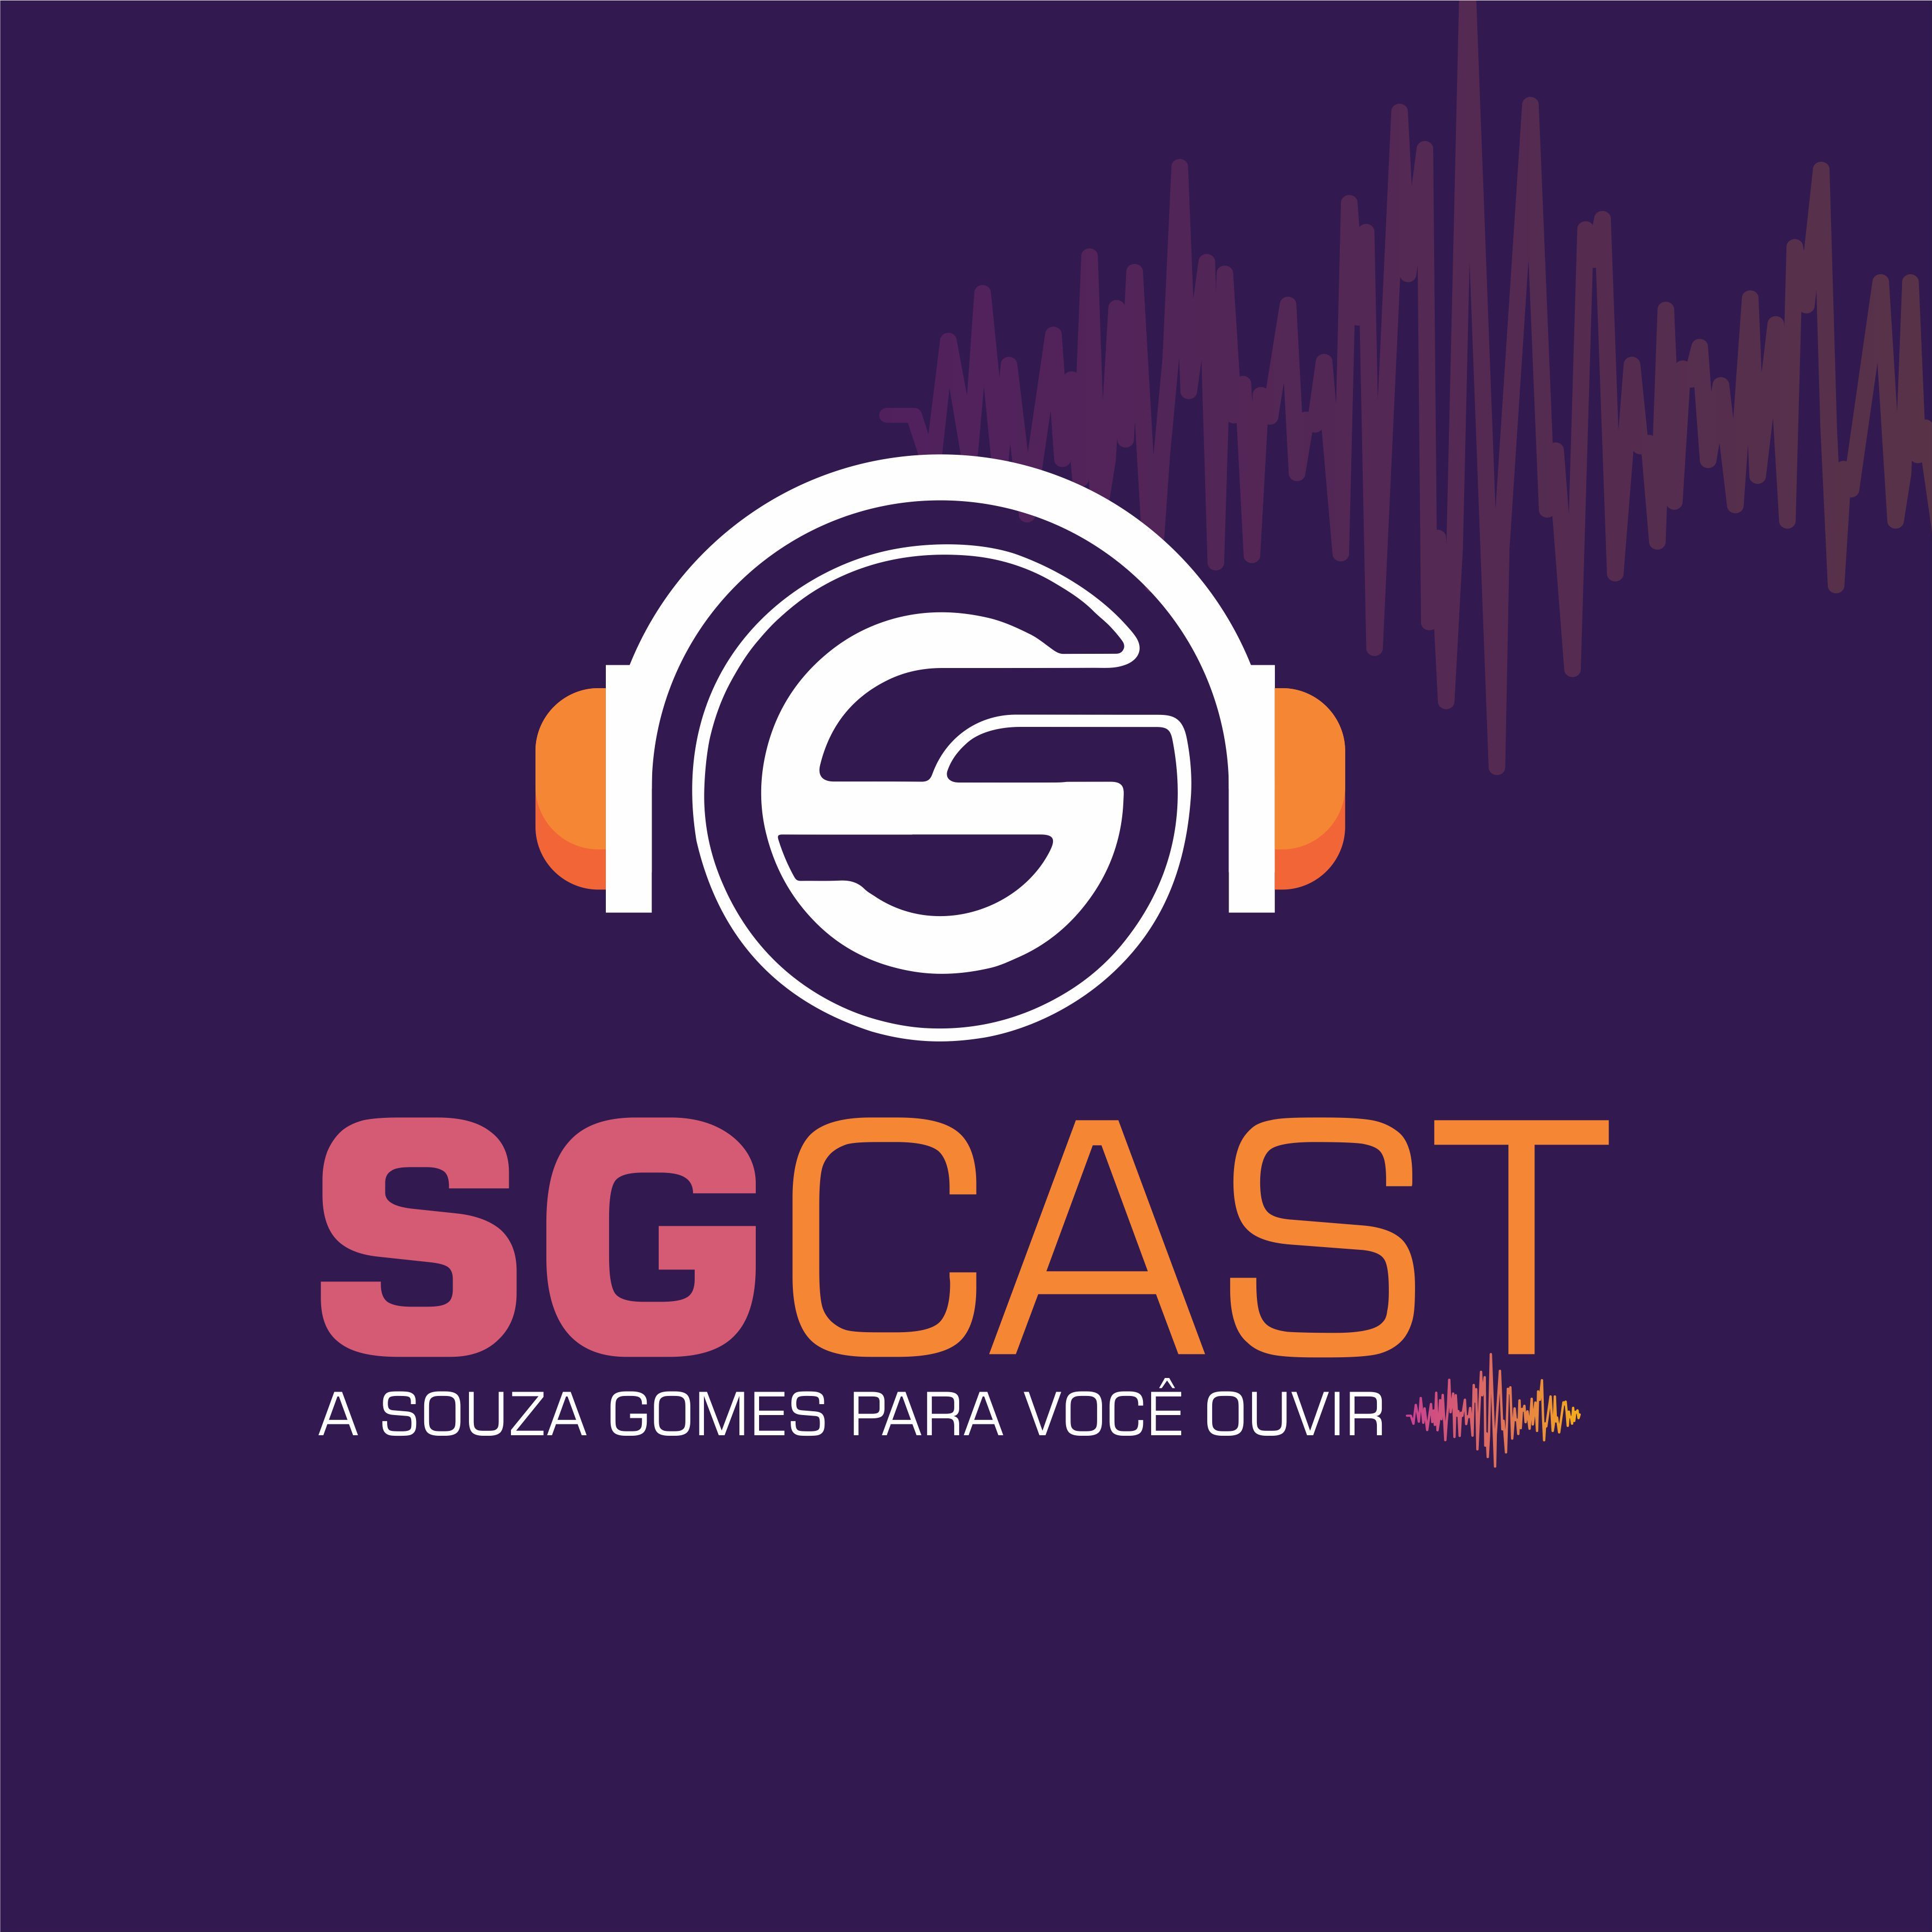 SGCast - Existe "passar" o financiamento para outra pessoa?